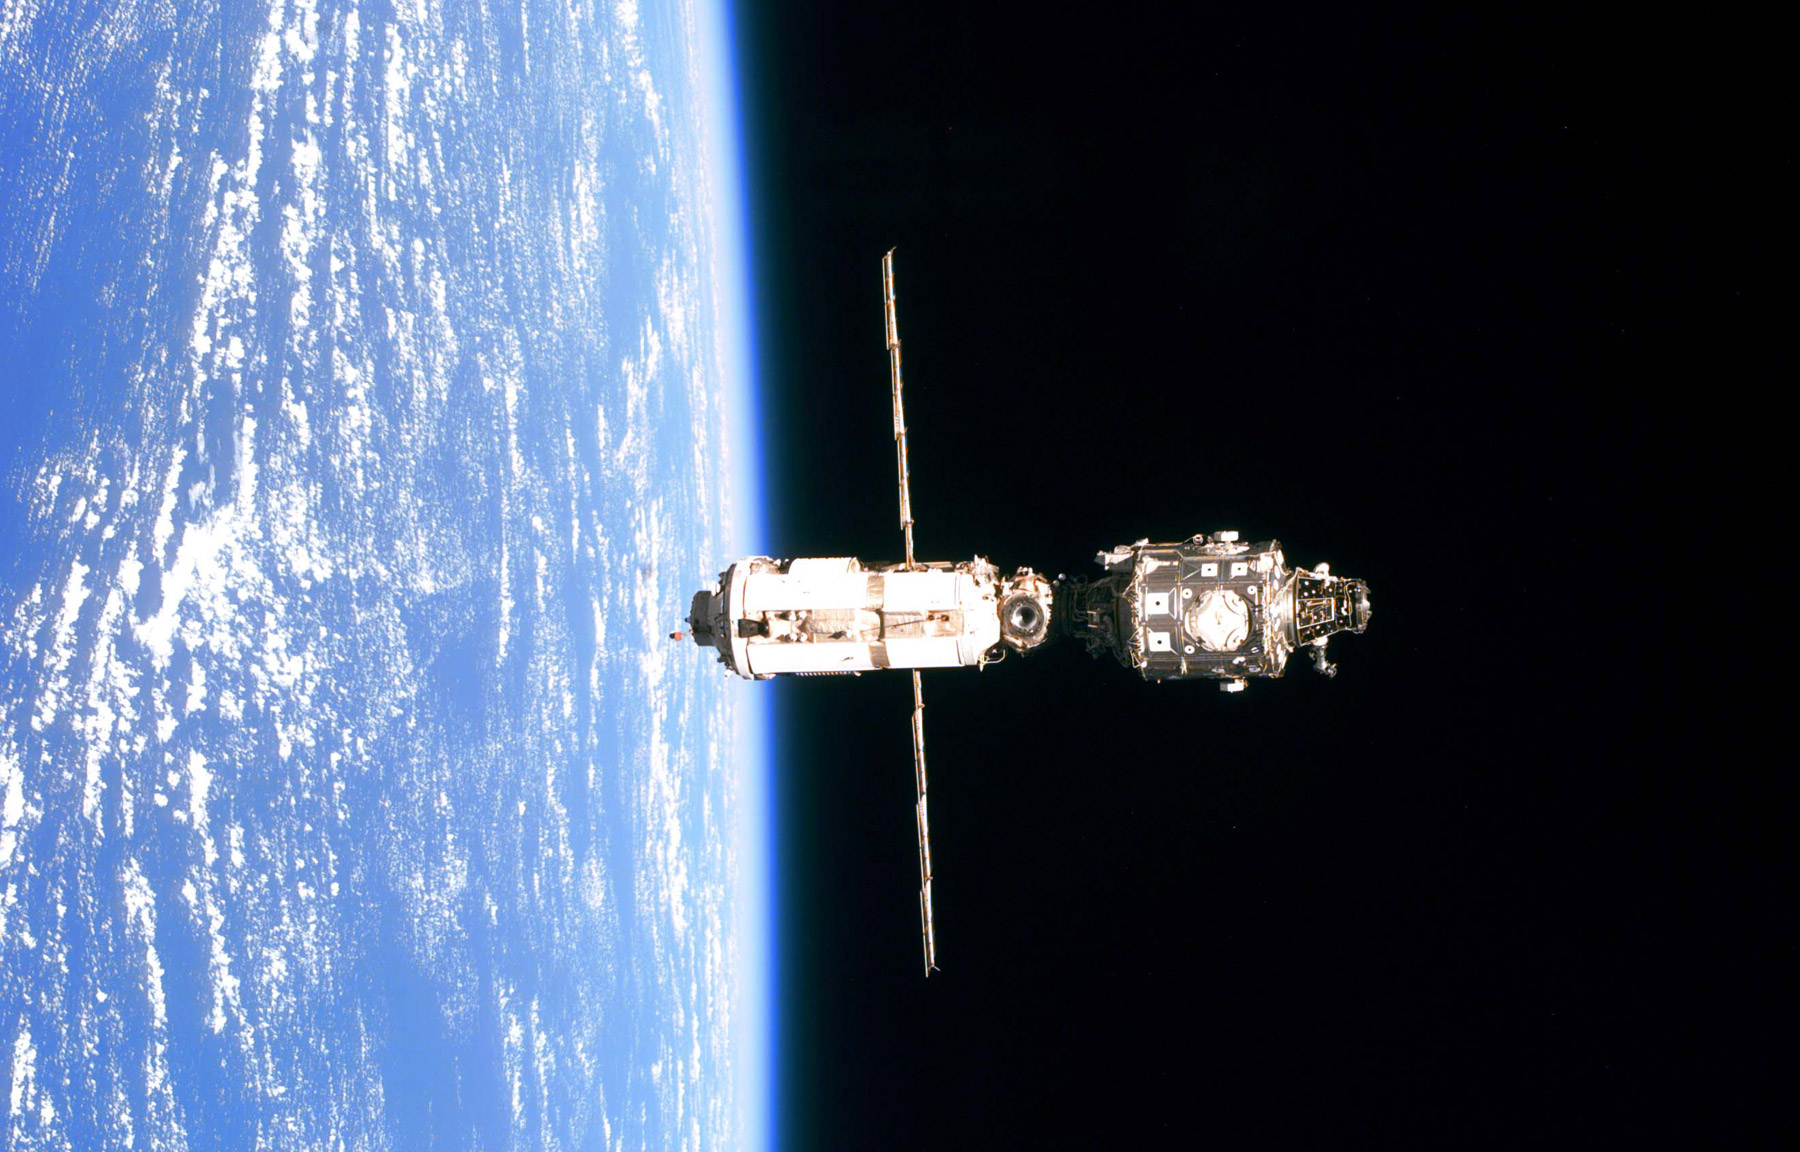 Juin 1999 : La Station se compose de 2 modules